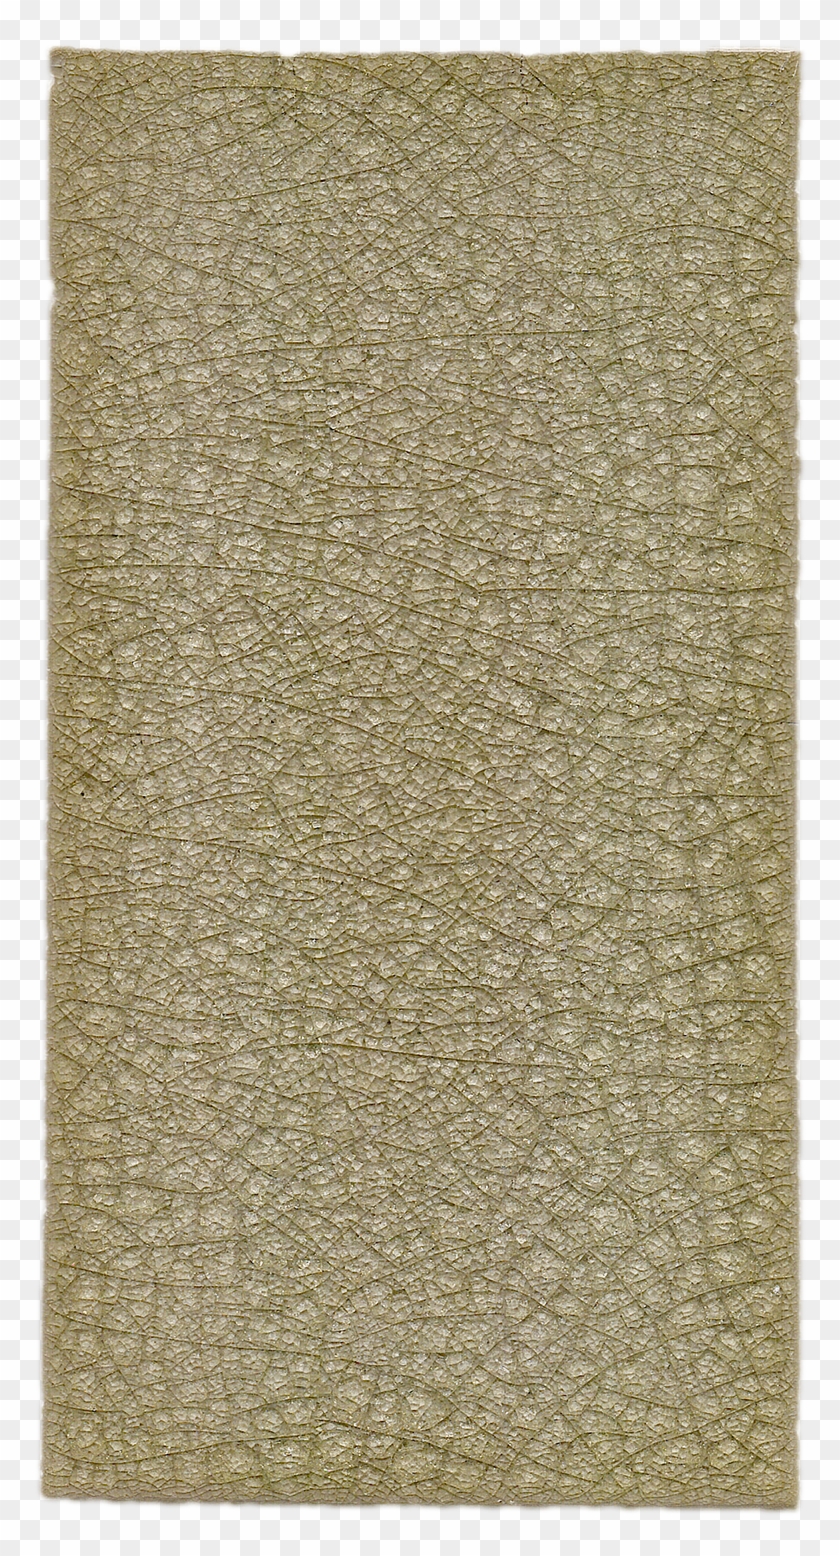 Ssr-1452 Web - Carpet Clipart #4847062